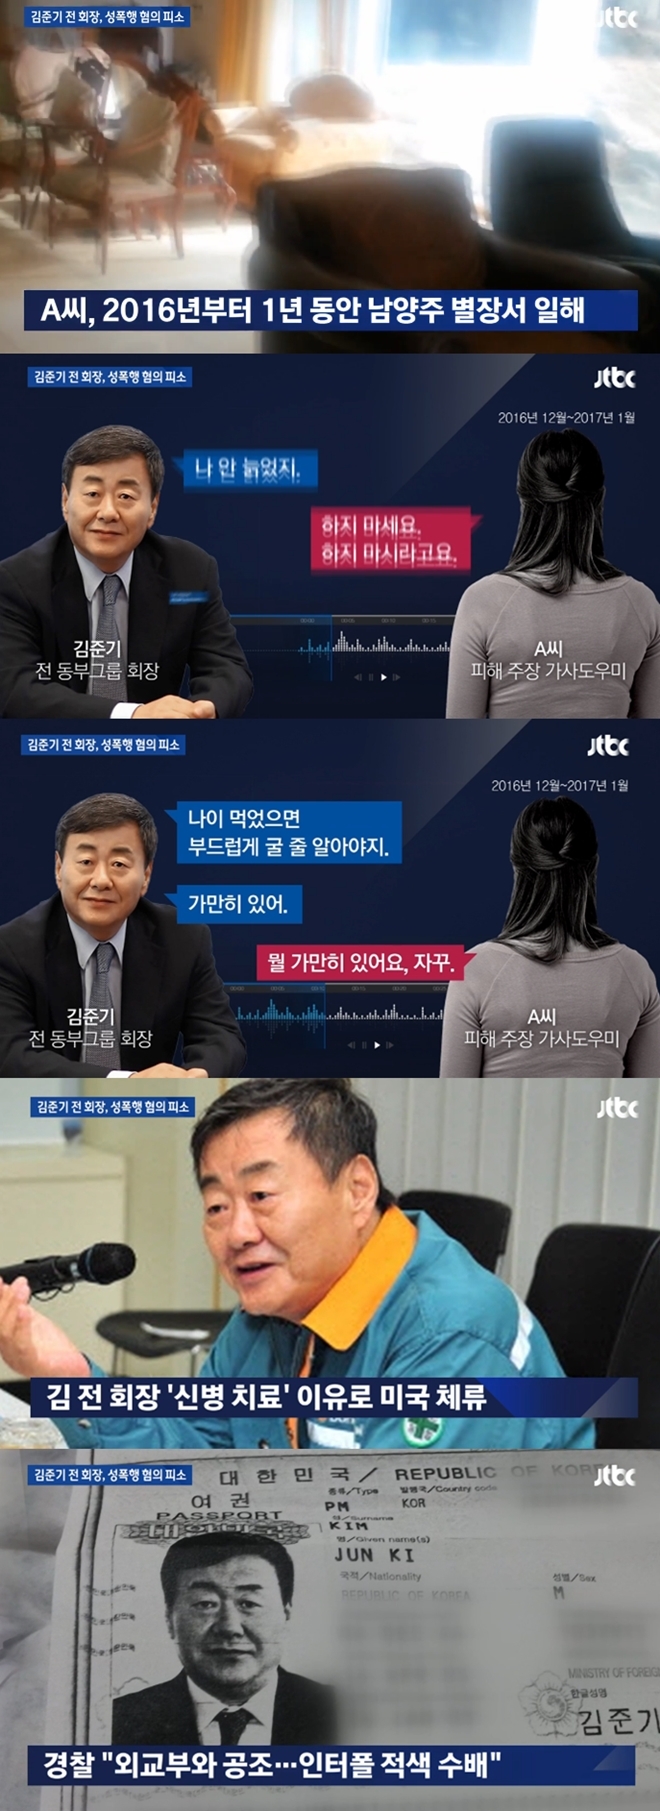 가사도우미 성폭행 혐의 김준기 (사진: JTBC)